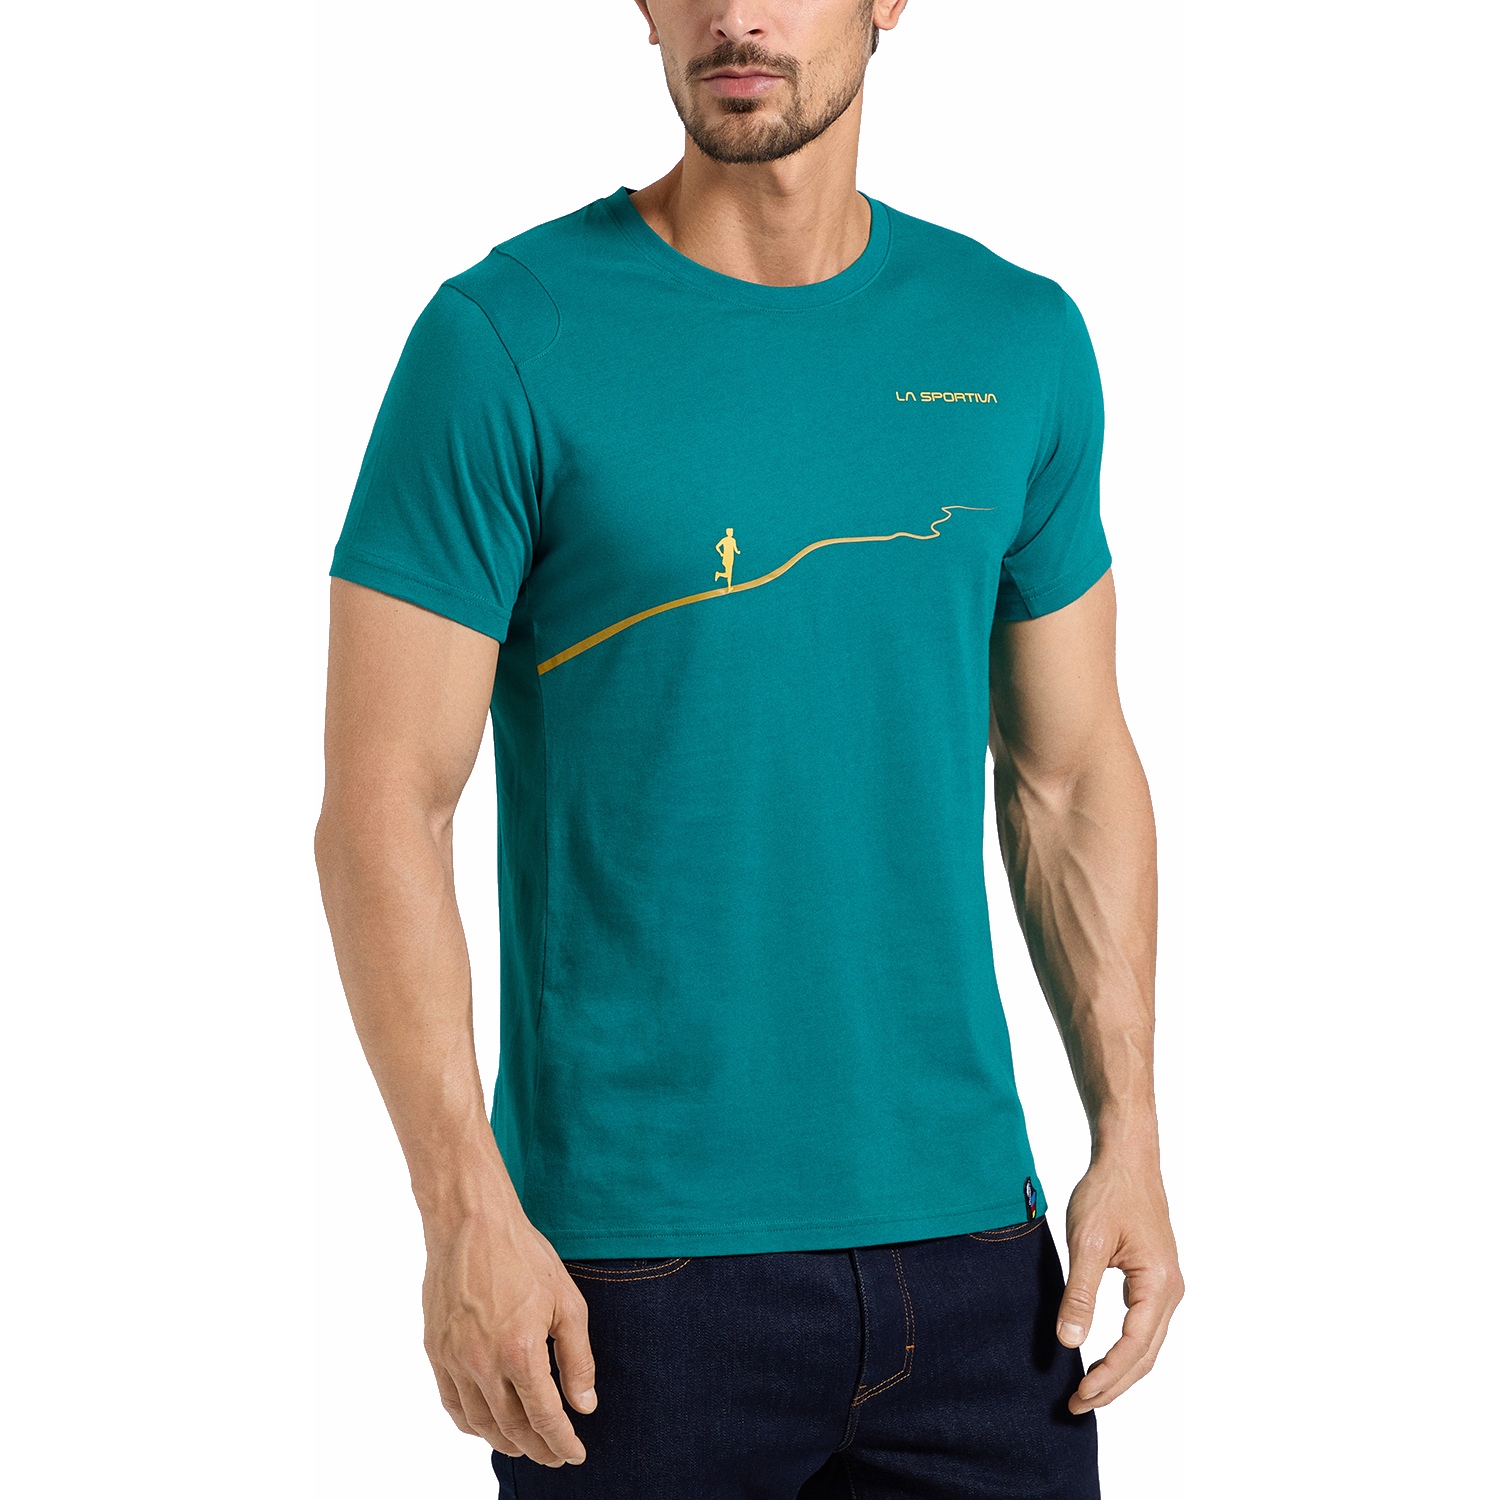 Productfoto van La Sportiva Trail T-Shirt Heren - Everglade